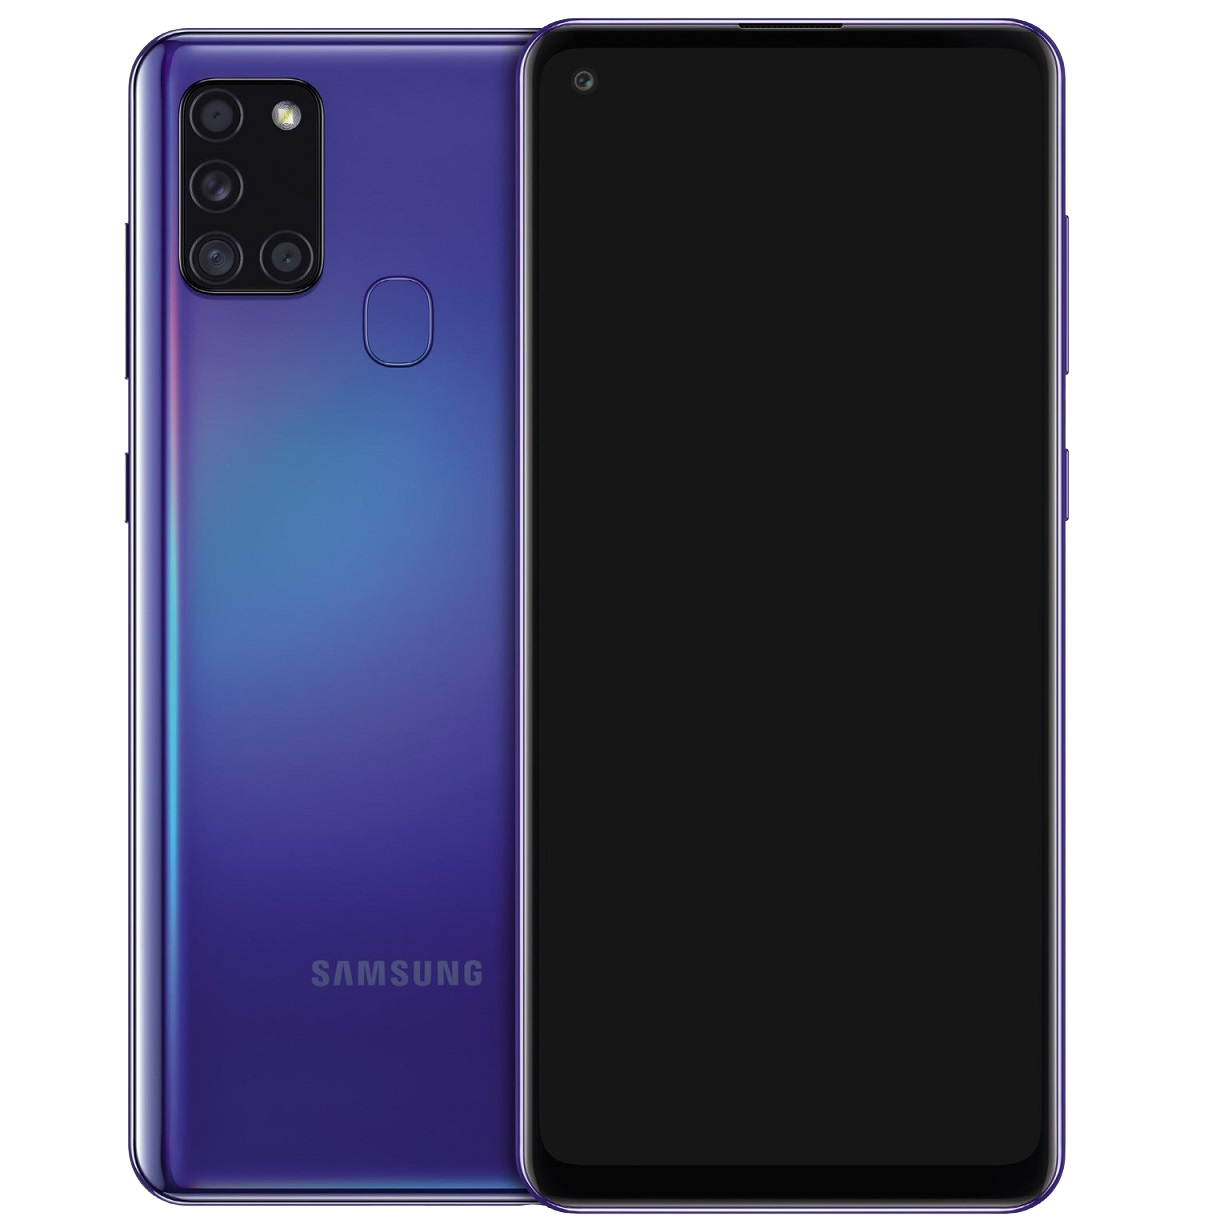 Samsung Galaxy A21s Dual-SIM blau - Ohne Vertrag